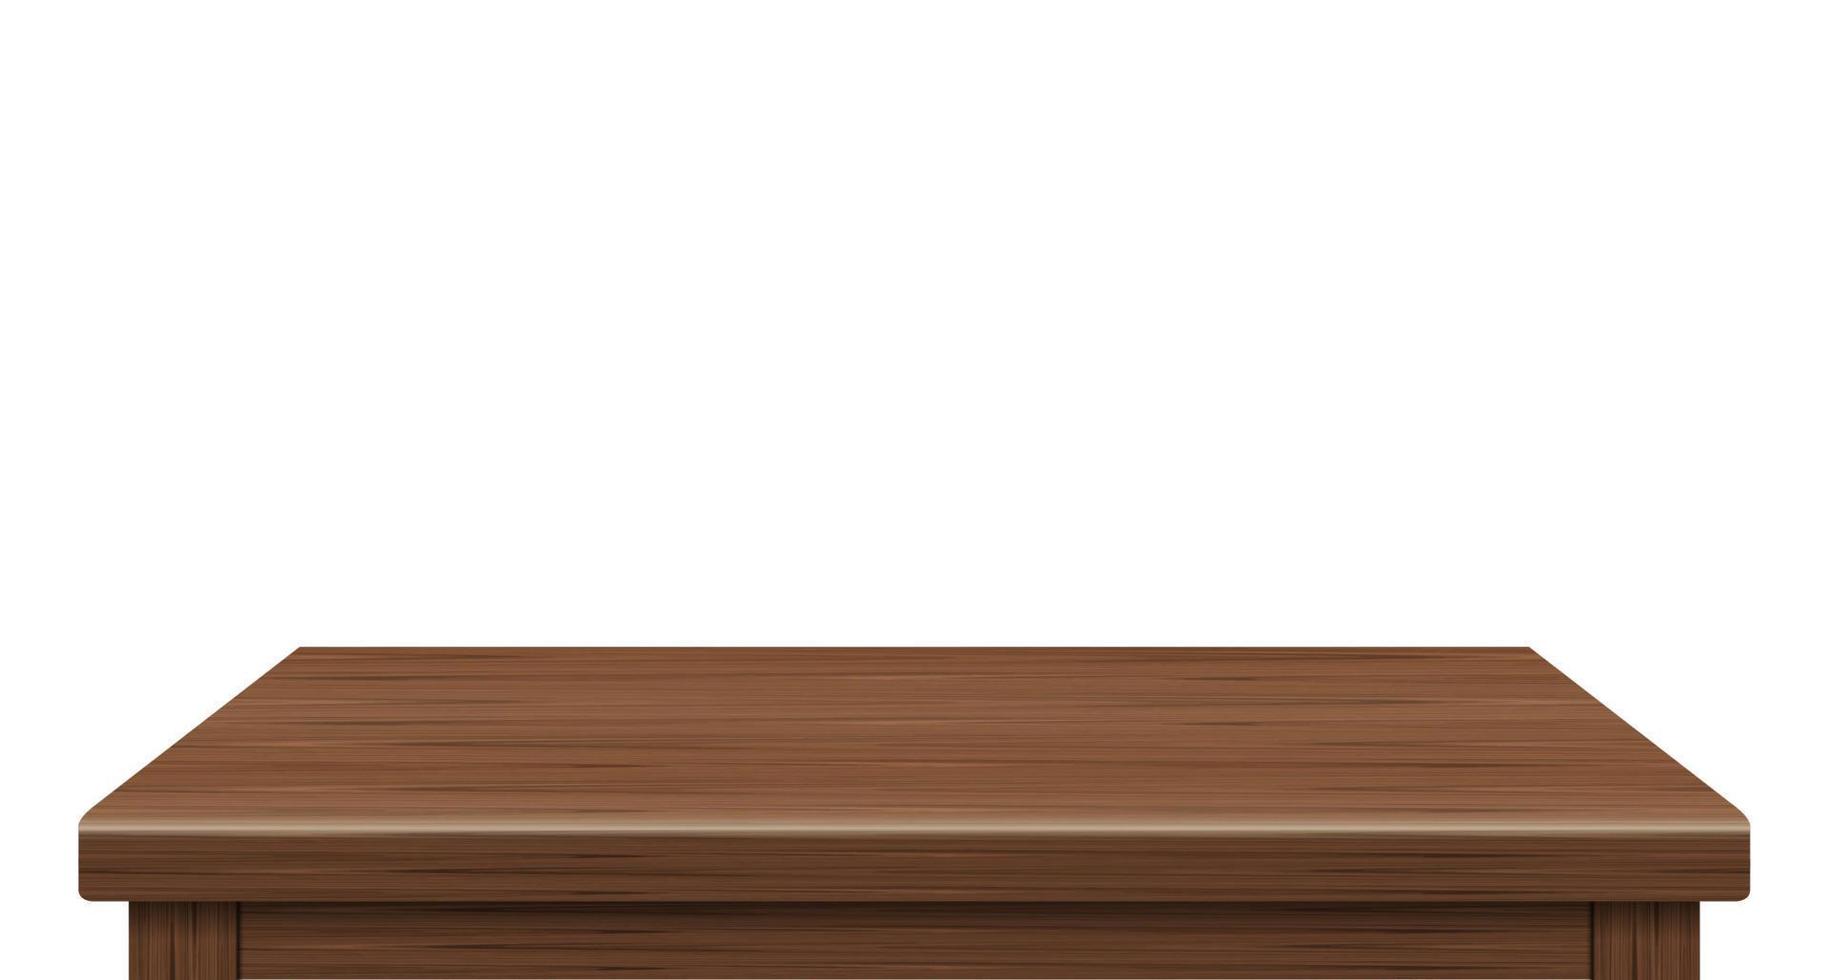 Seitenansicht des leeren Holztischs mit freiem Speicherplatz für Ihr Copy-Branding. Wird für Display- oder Montageprodukte verwendet. Vintage-Stil-Konzept. Holzbraune realistische Oberfläche isoliert auf weißem Hintergrund. 3D-Vektor. vektor